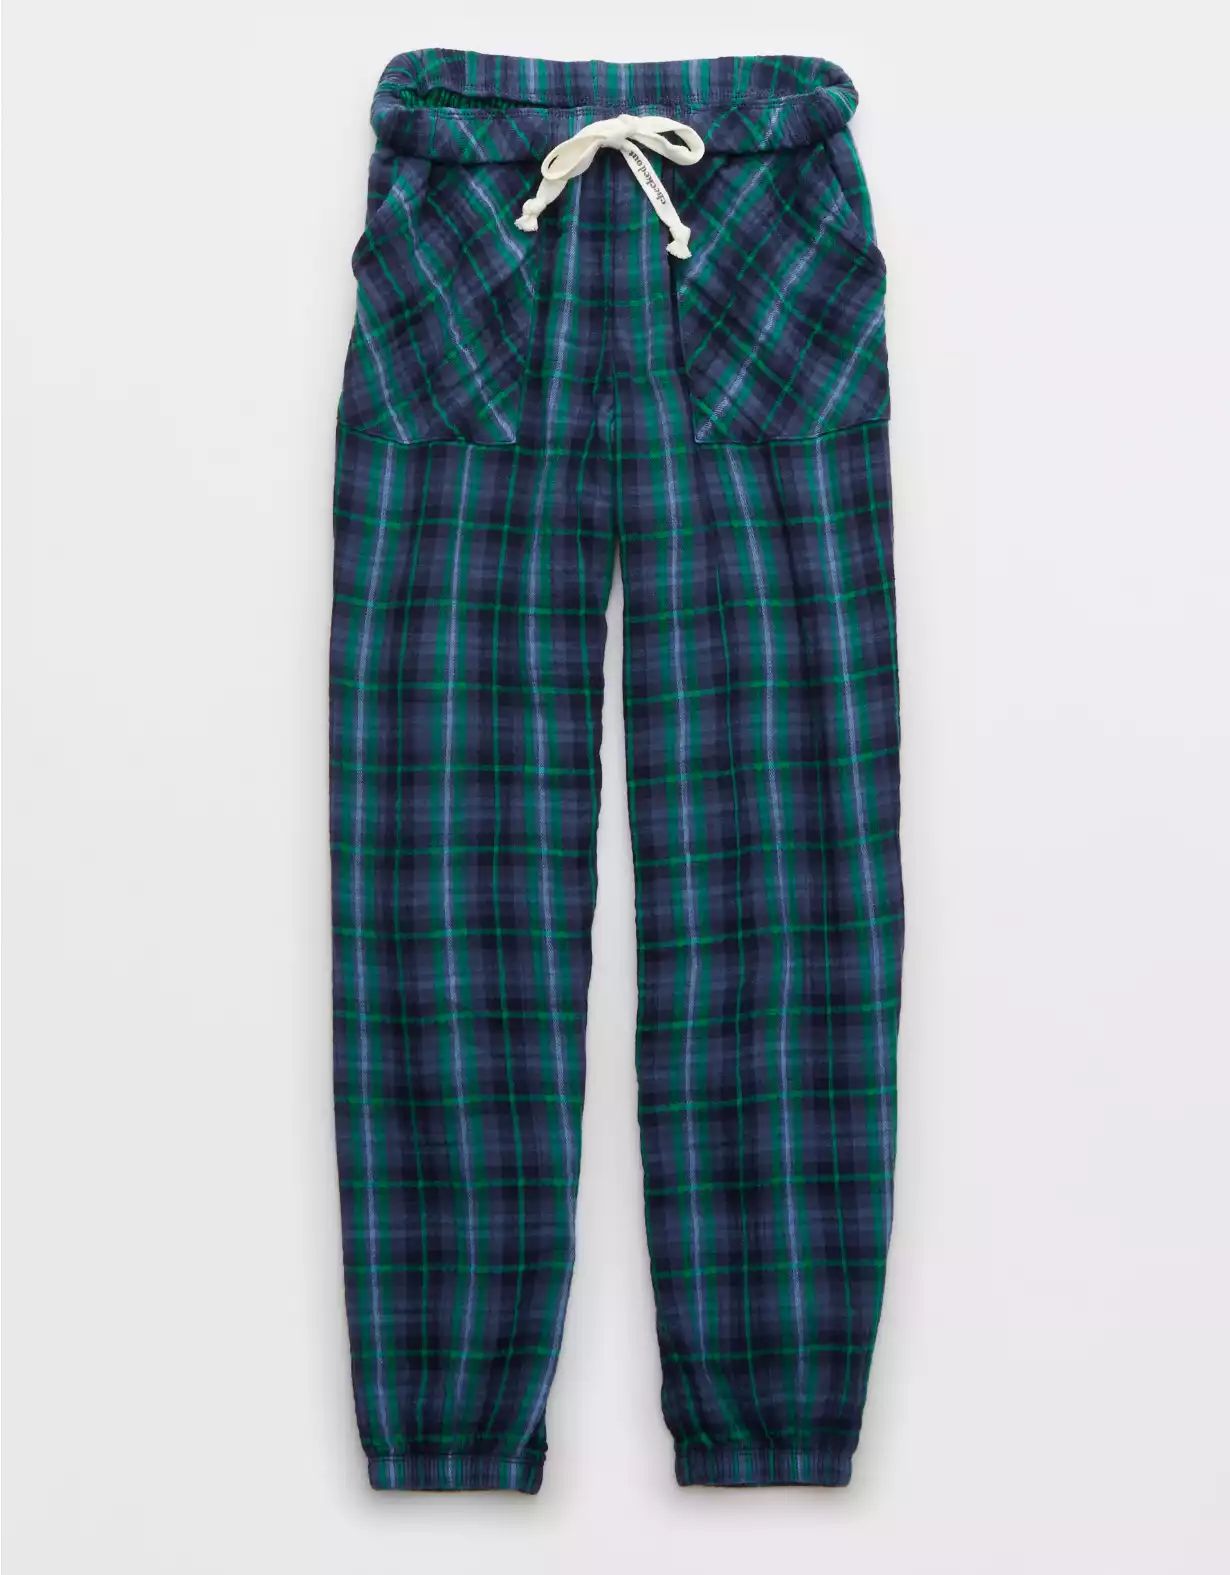 Aerie Soft Gauze Pajama Jogger | Aerie